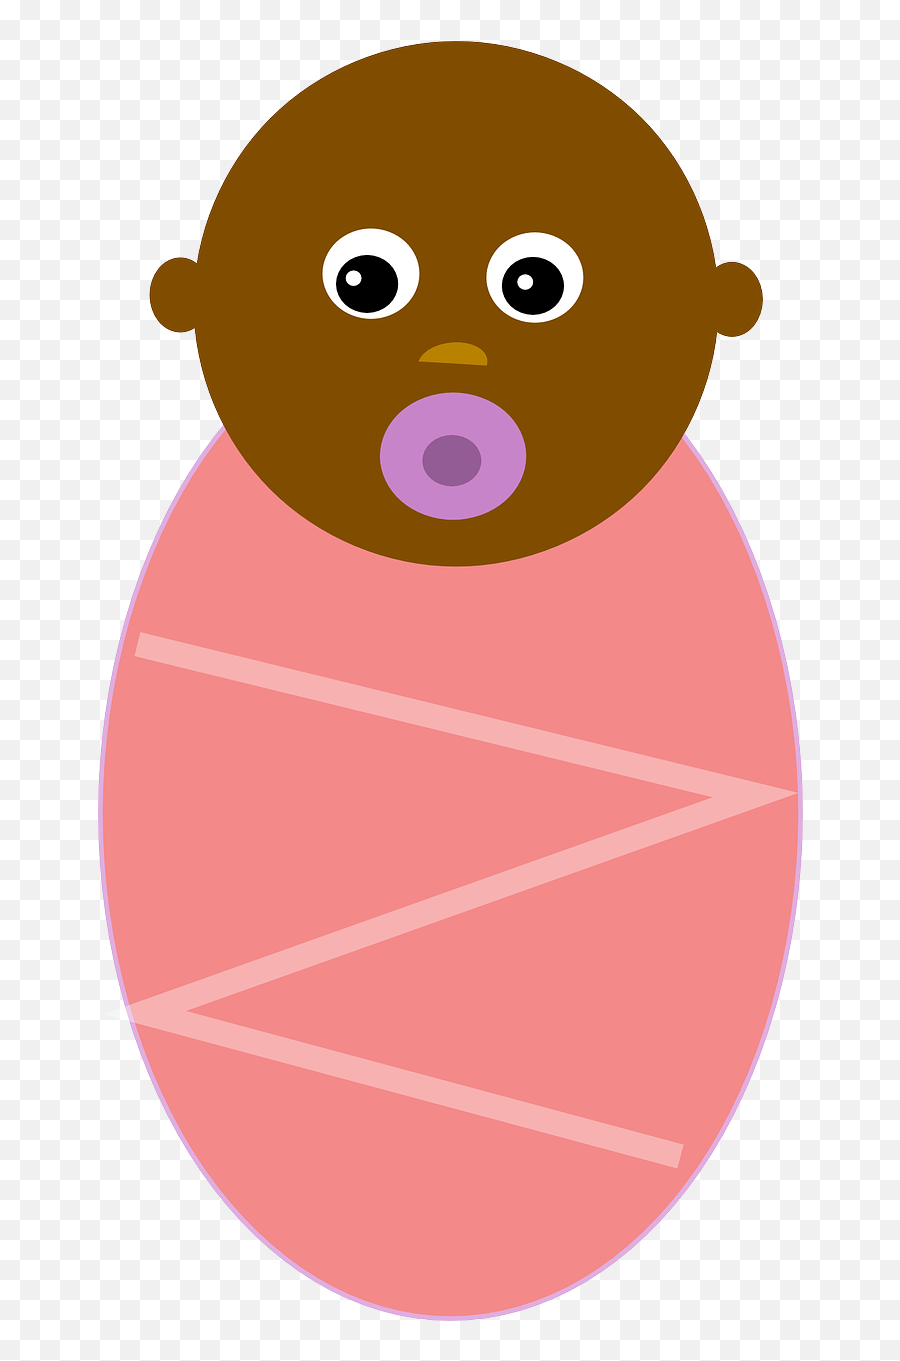 Baby Black Girl Free Picture - Black Baby Girl Clipart Dibujo De Bebe Negro Emoji,Baby Girl Clipart